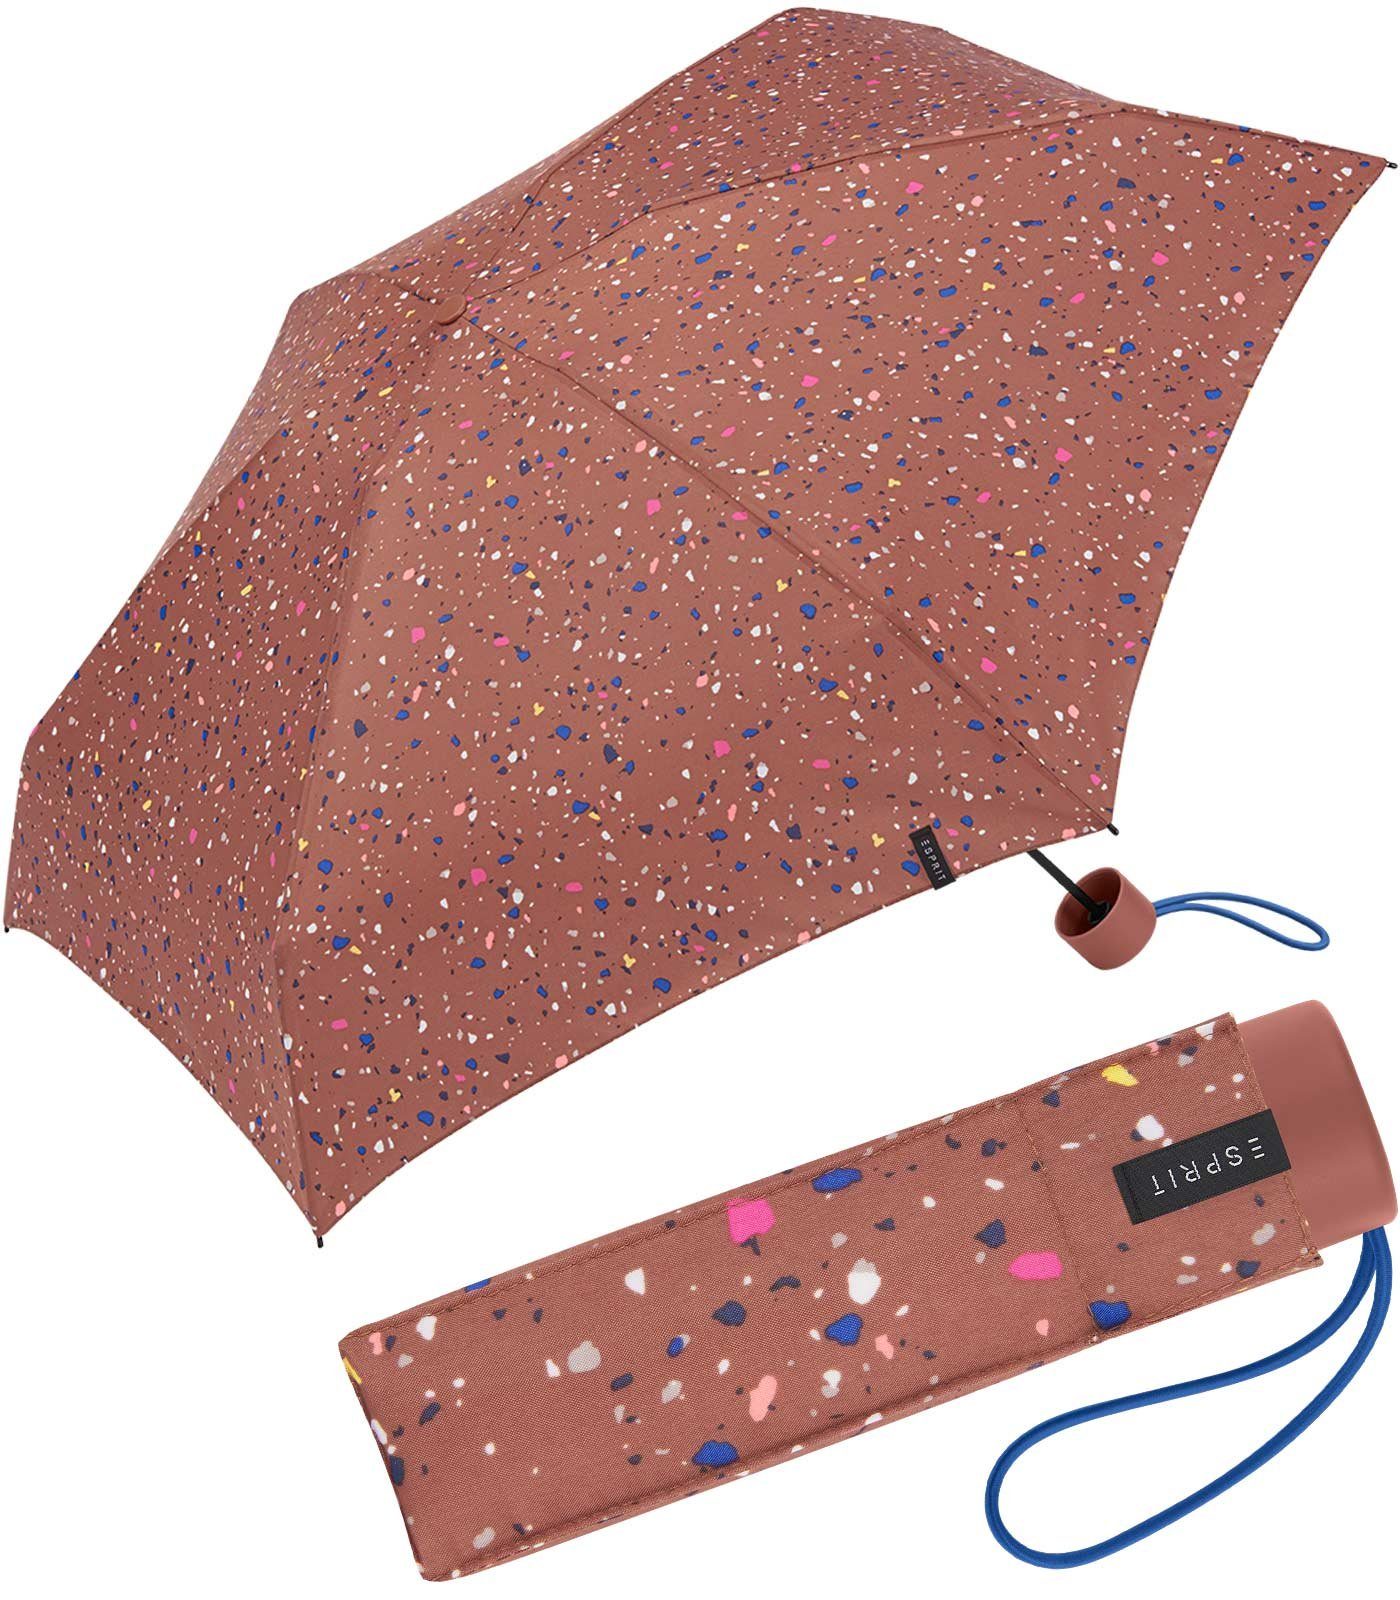 Dots klein, den - in - neuen Taschenregenschirm winzig Mini Trendfarben Esprit Regenschirm Terrazzo Petito terra,